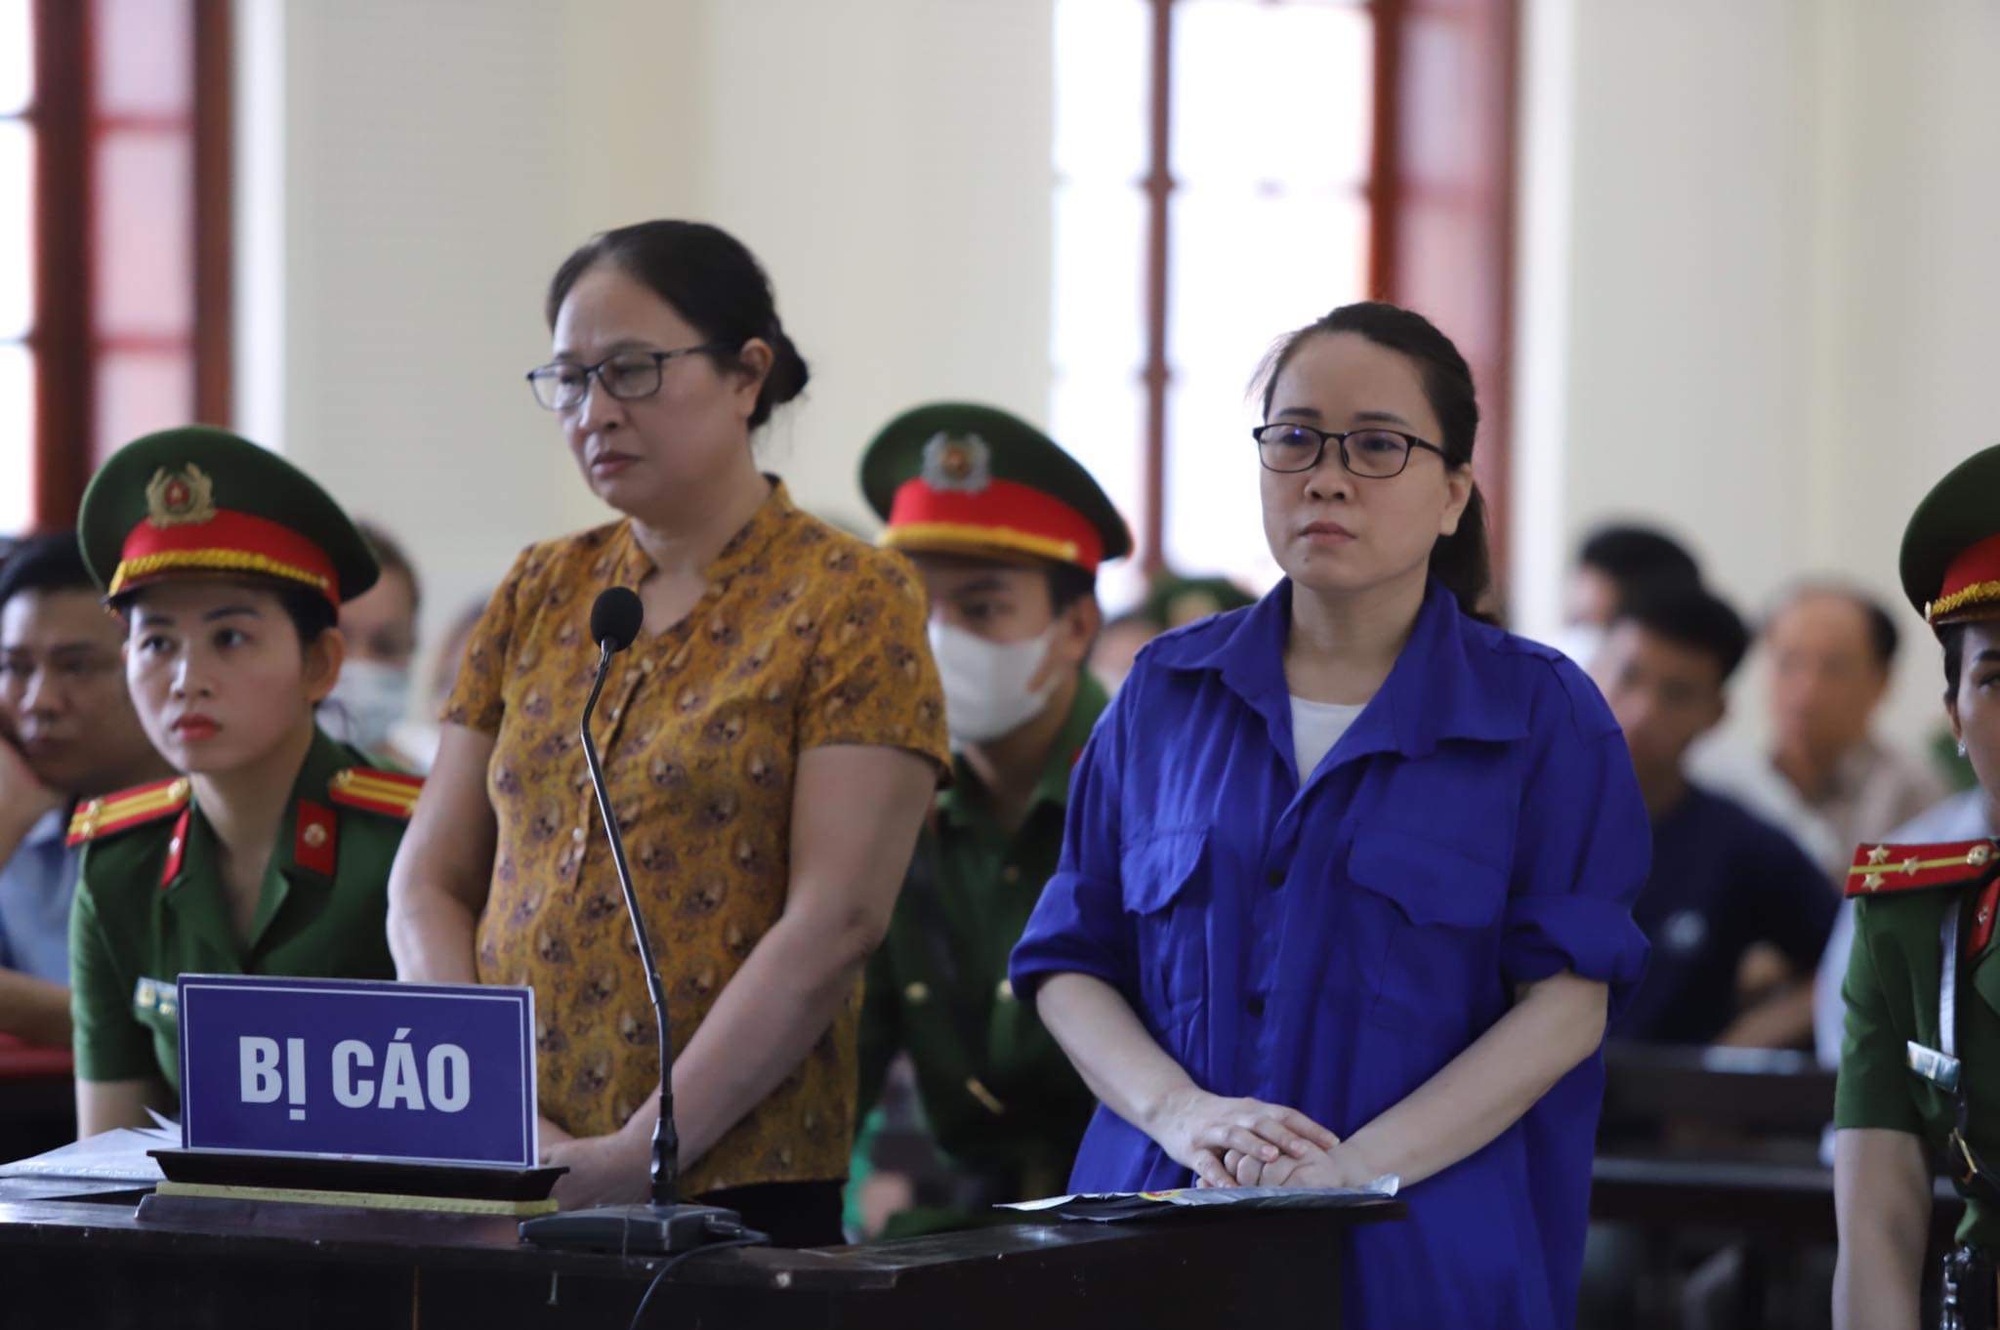 Tòa cấp sơ thẩm áp dụng thiếu sót, cô giáo Lê Thị Dung chỉ bị giam 15 ngày nữa - Ảnh 1.